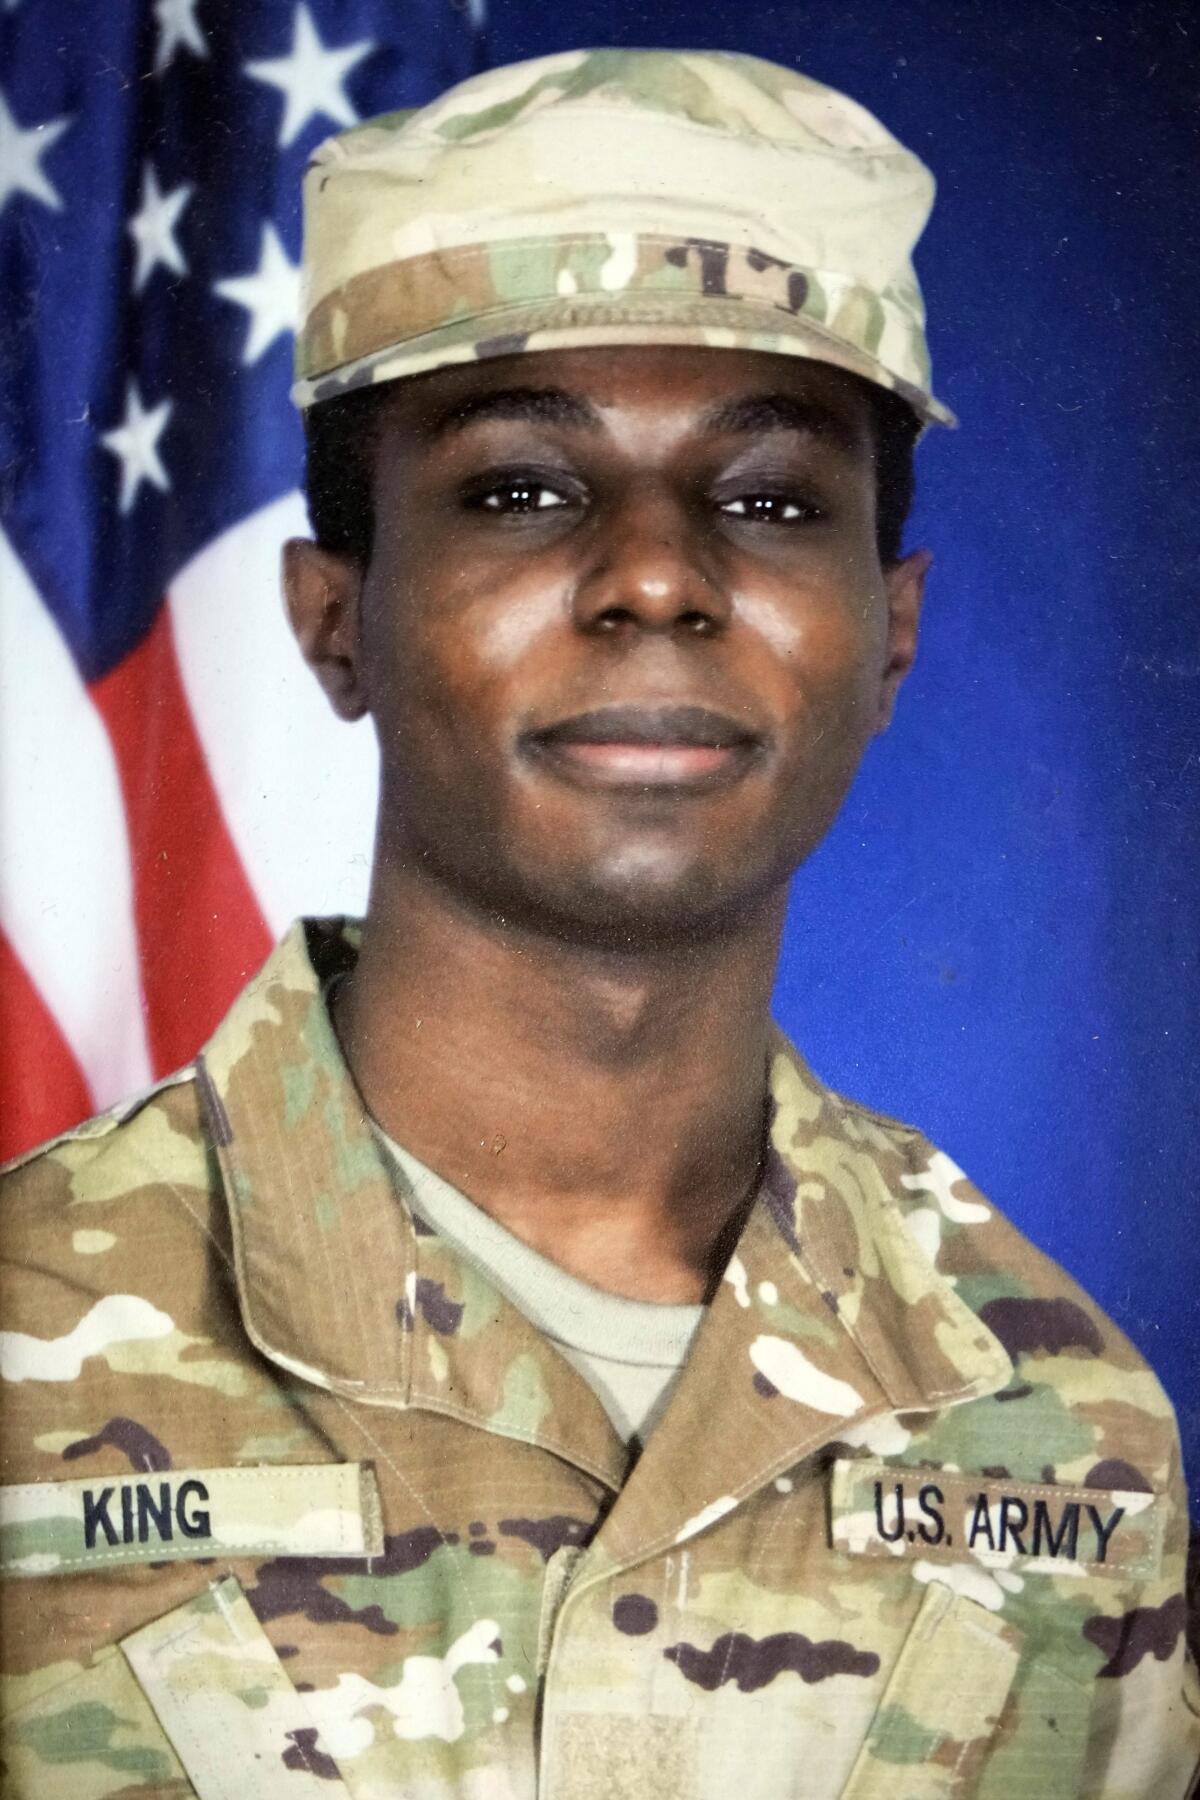 A portrait of U.S. soldier Travis King in uniform.